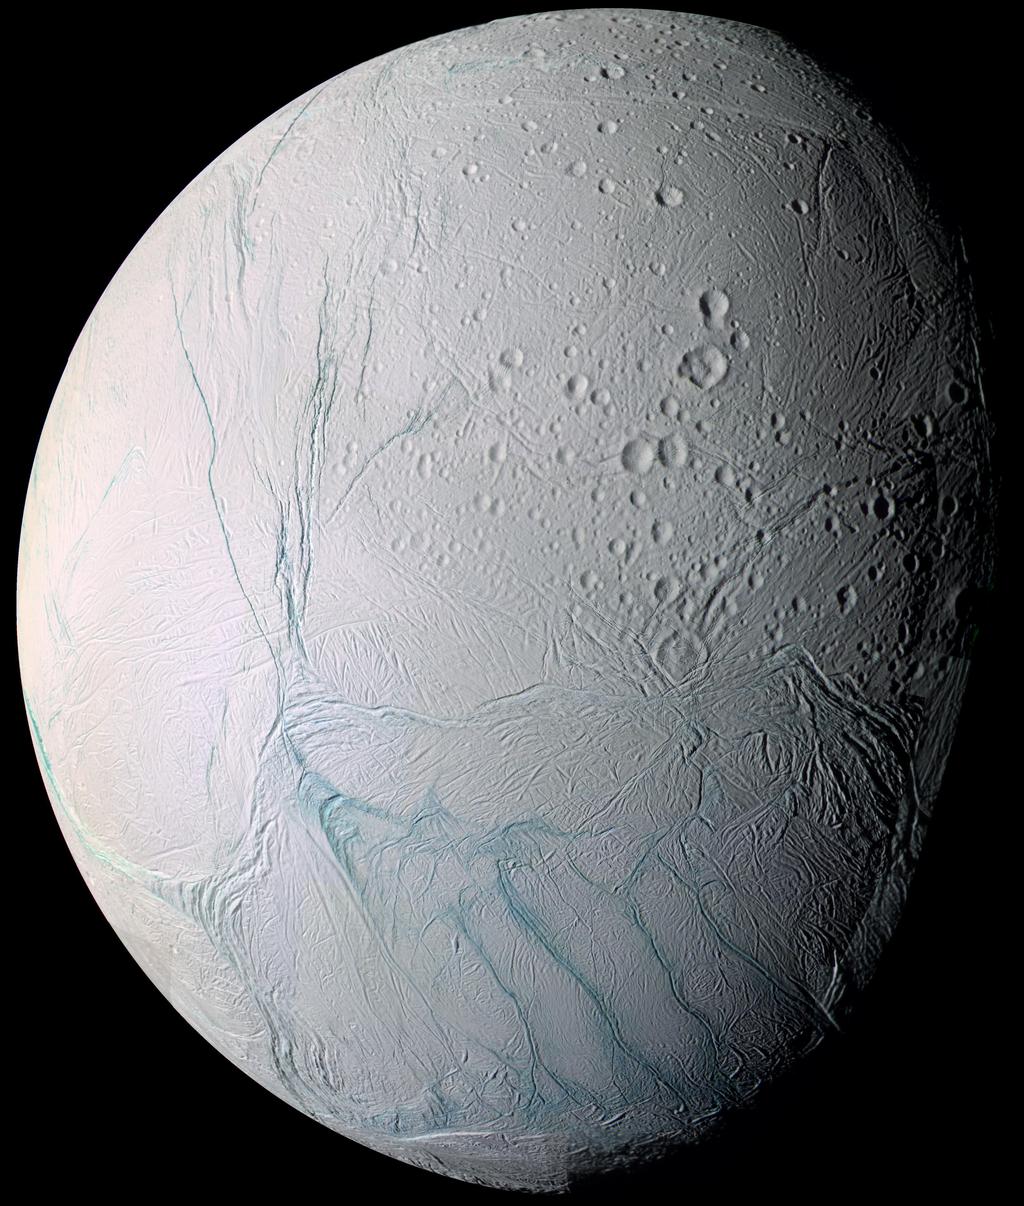 35 Enceladus An inner moon of Saturn.